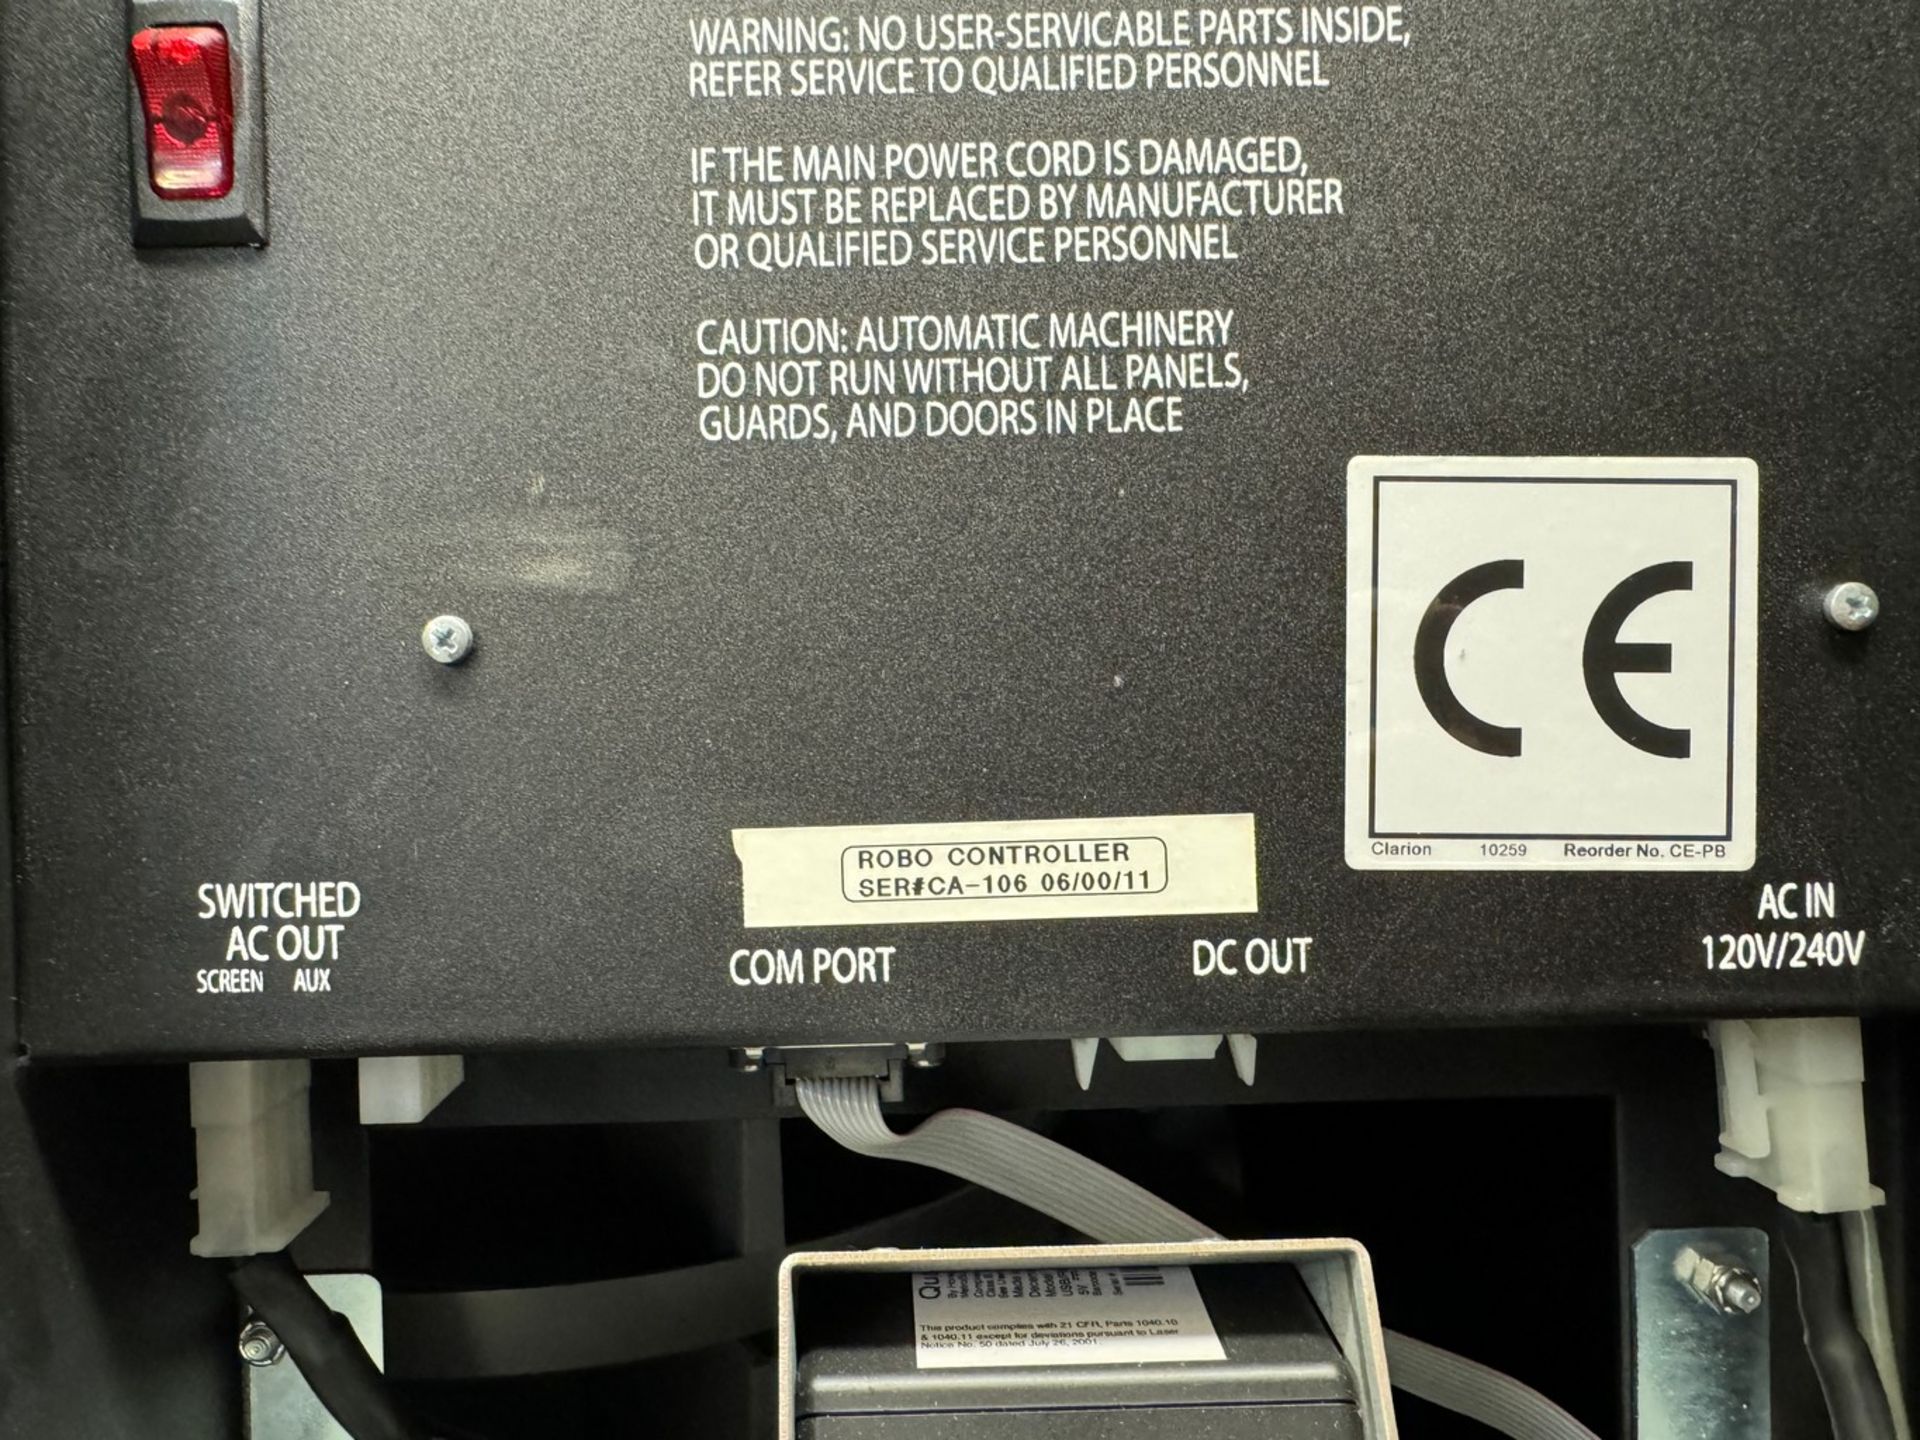 AutoCrib RoboCrib 500 Industrial Tool Dispensing Machine - Image 4 of 5